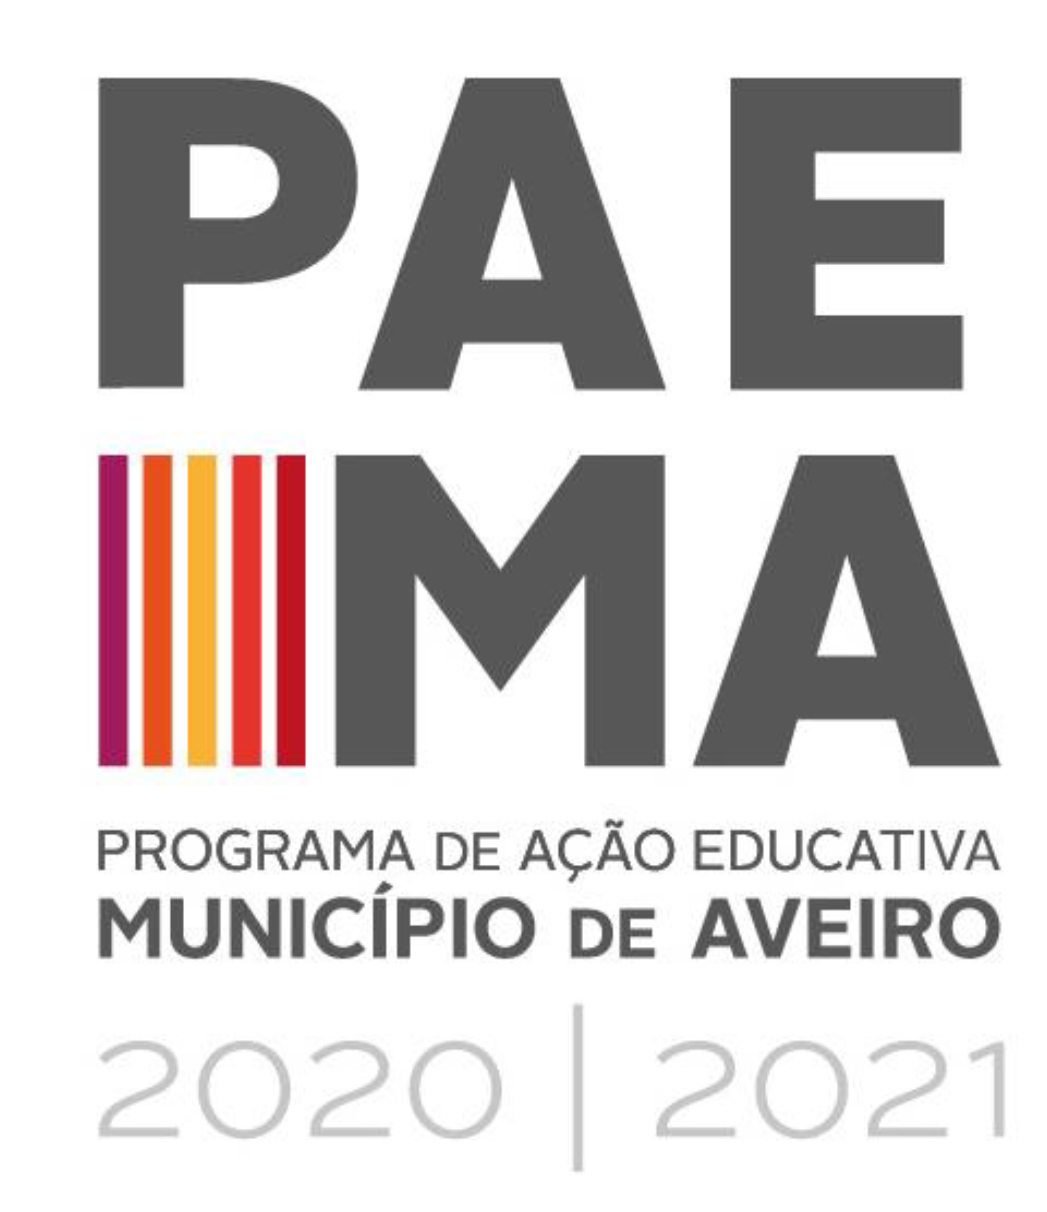 PROGRAMA DE AÇÃO EDUCATIVA DO MUNICÍPIO DE AVEIRO 2020/2021